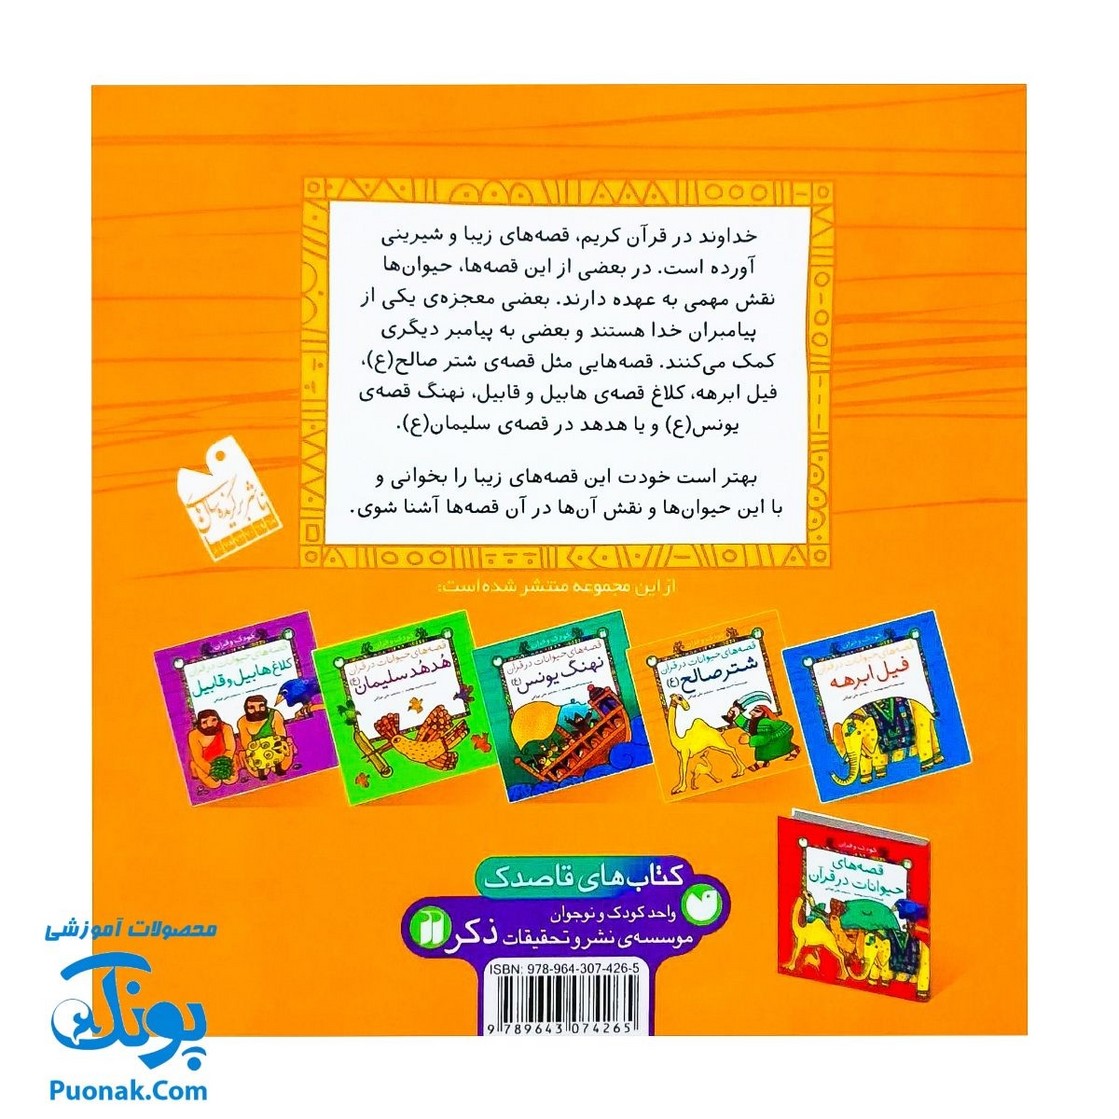 کتاب کودک و قرآن از مجموعه قصه های حیوانات در قرآن شتر صالح